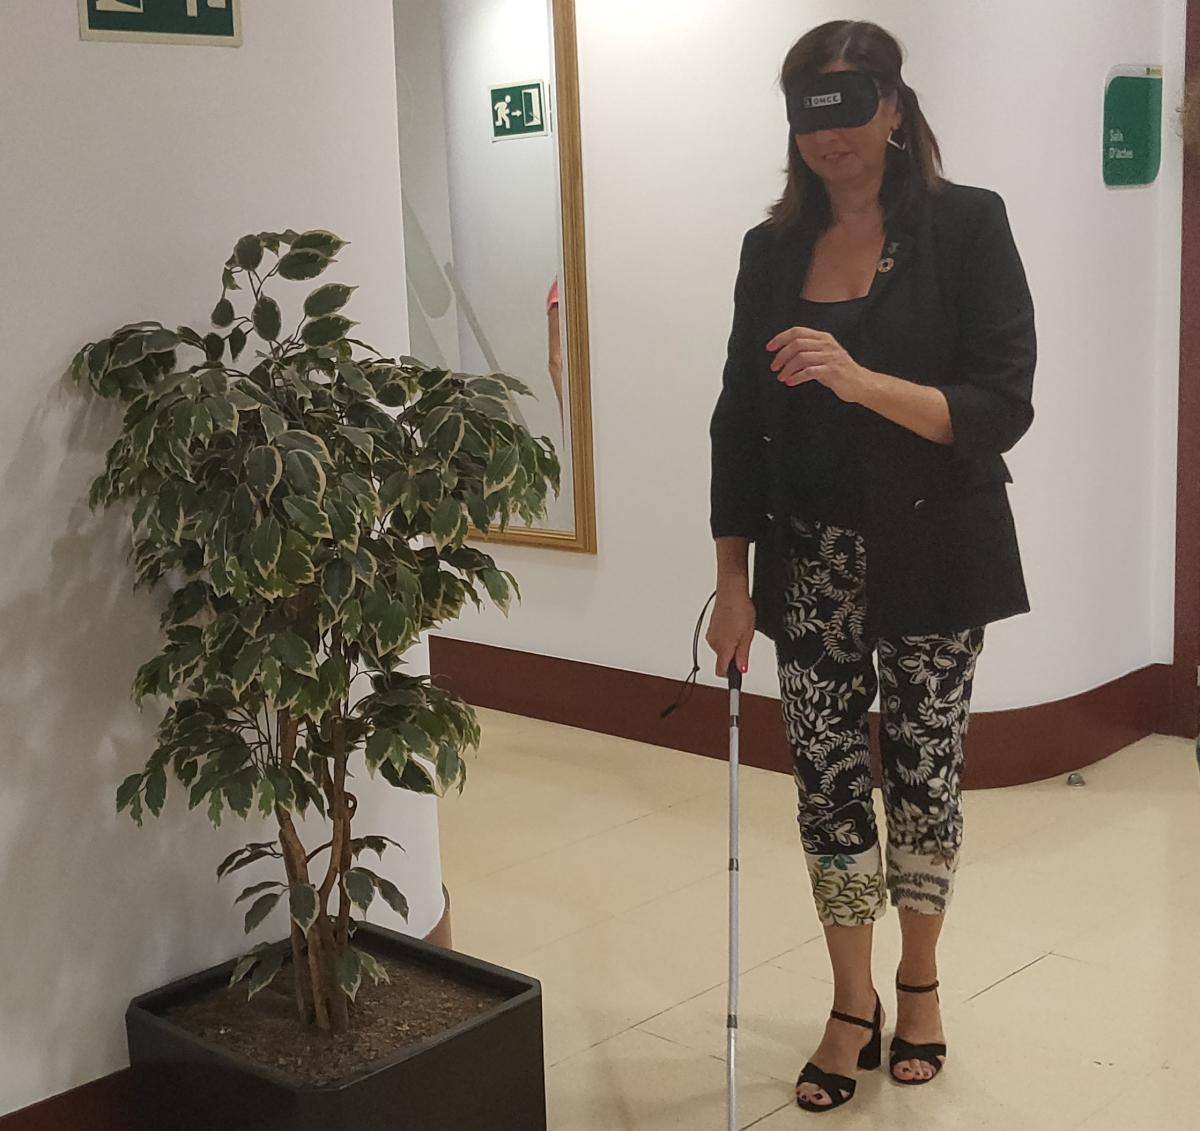 La regidora de Salut i Cicles de Vida de l’ajuntament de Sabadell, Sònia Sada, es va posar en la pell d’una persona cega amb antifaç i bastó per ‘veure’ els obstacles que una persona cega ha de superar en el seu dia a dia.